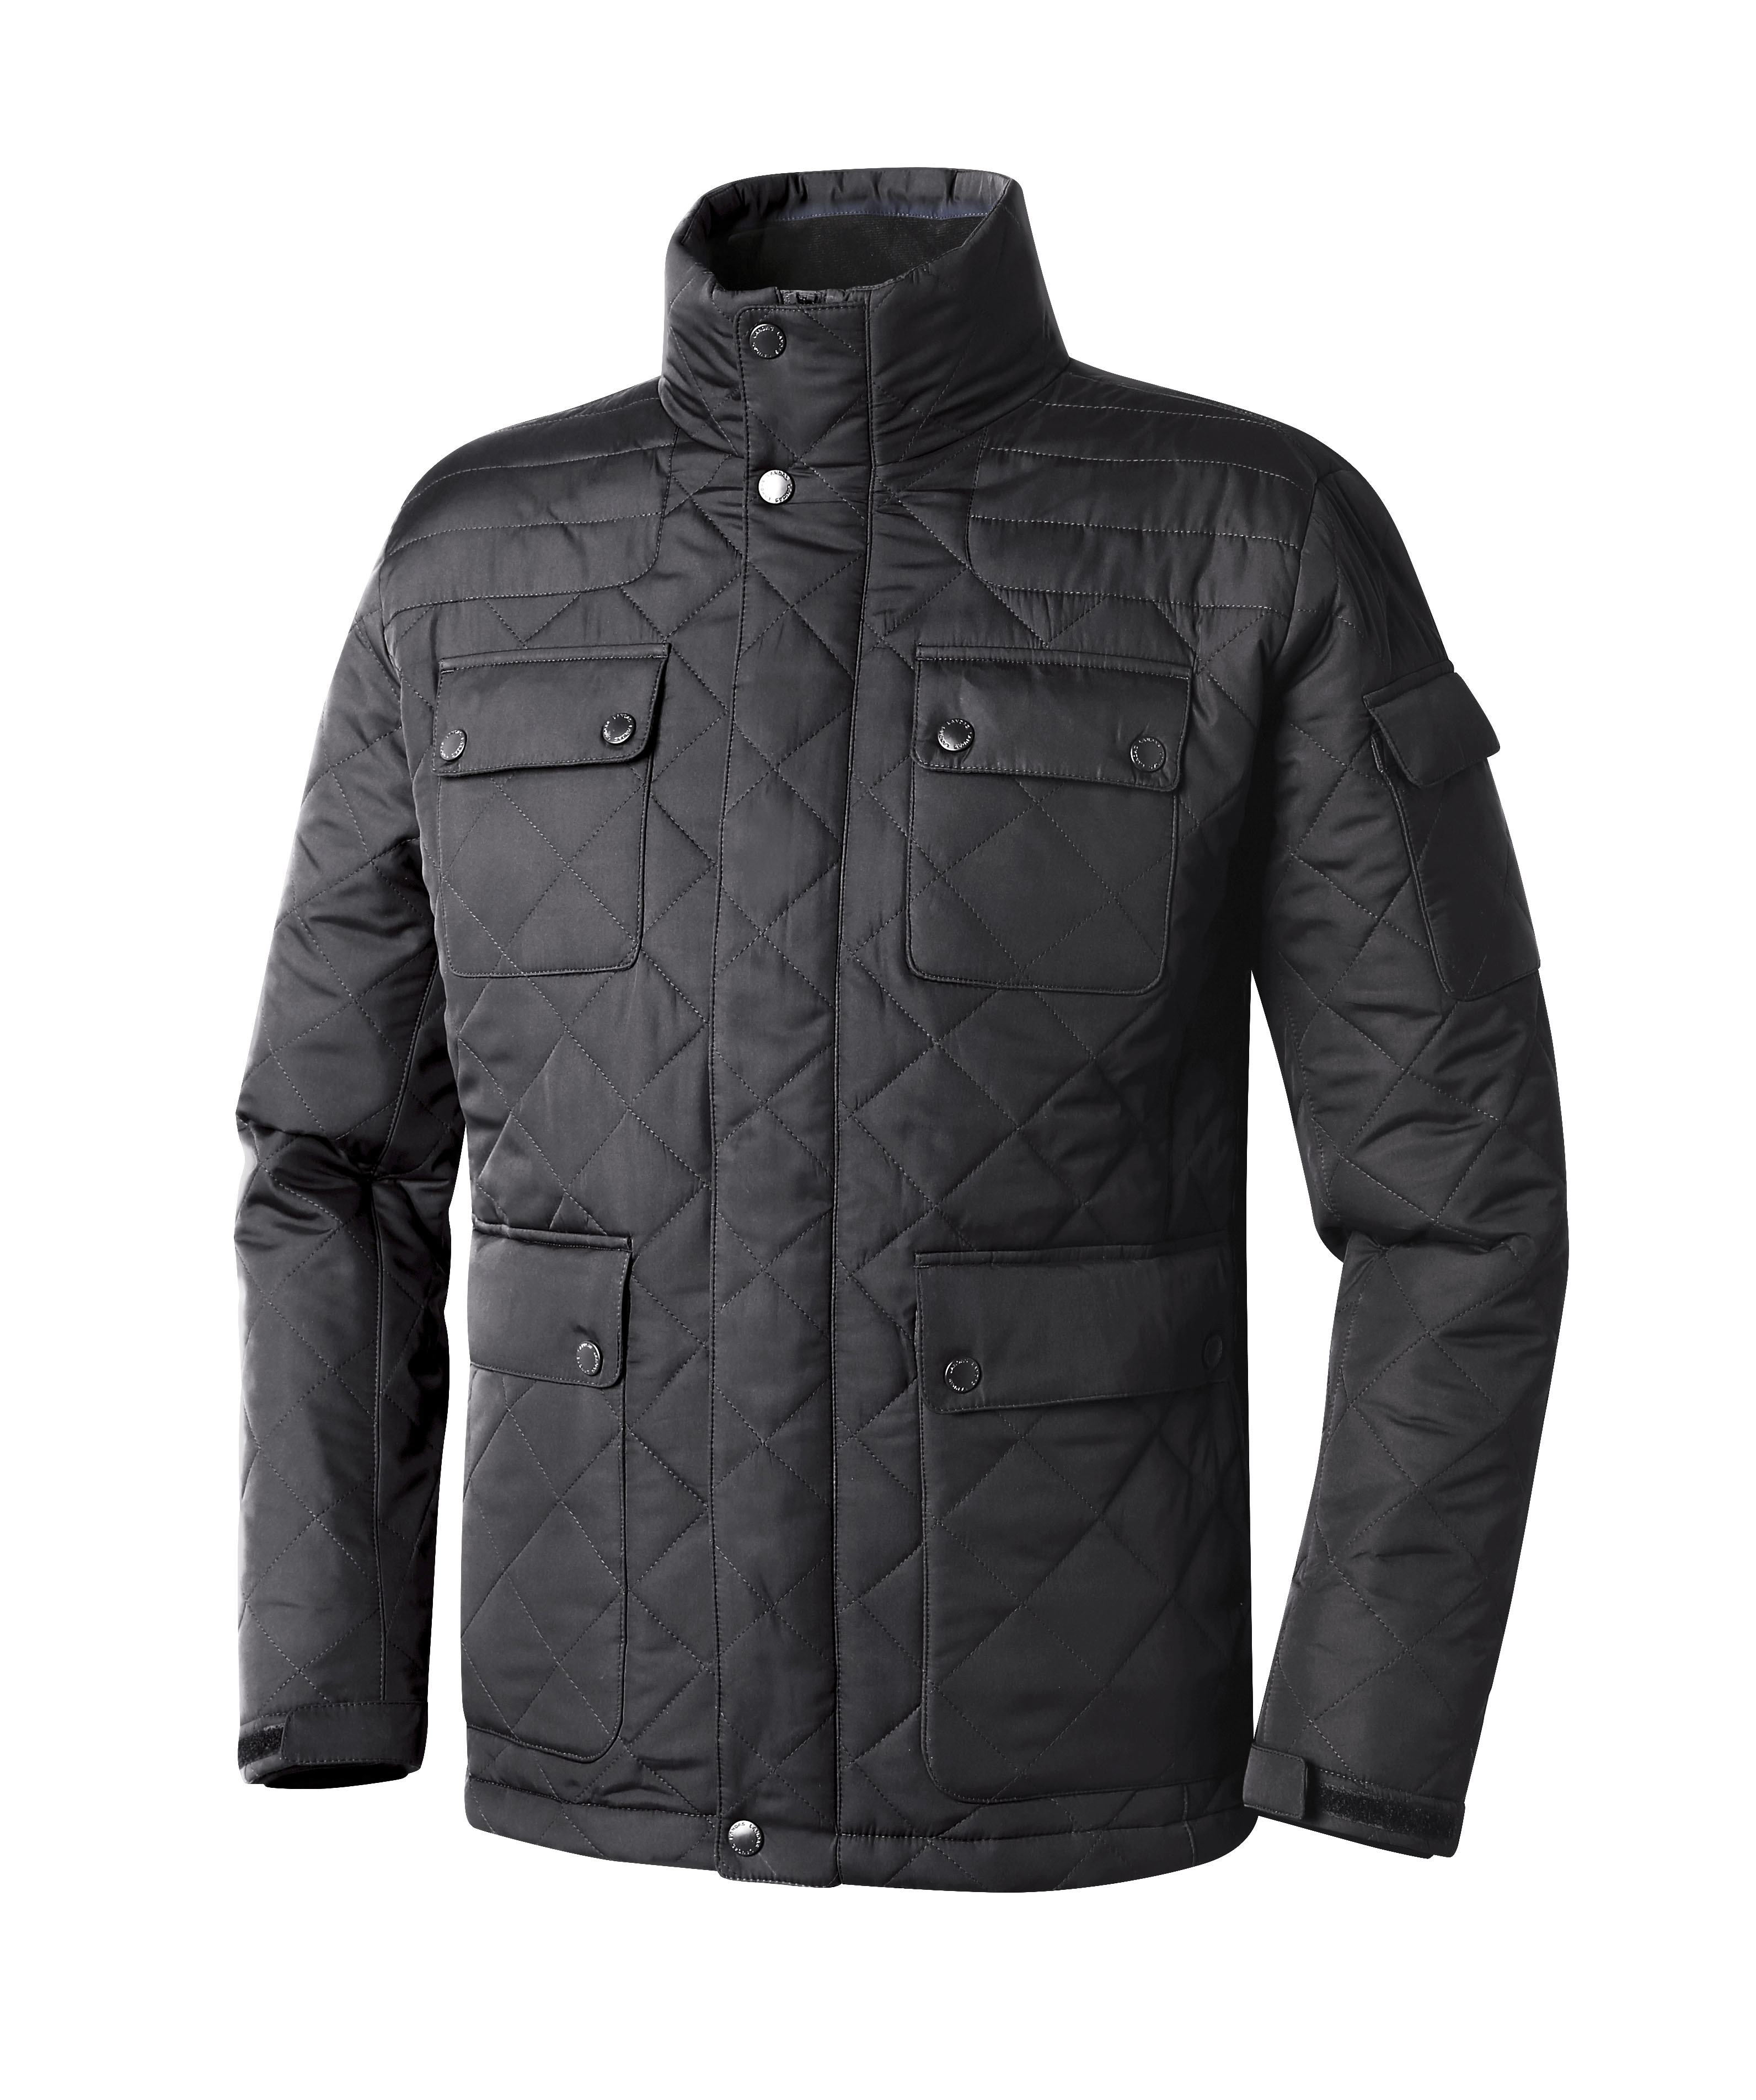 [랜더스 JK-755W] 캐주얼 퀼팅 패딩 자켓, 겨울자켓, 단체복, 롱패딩